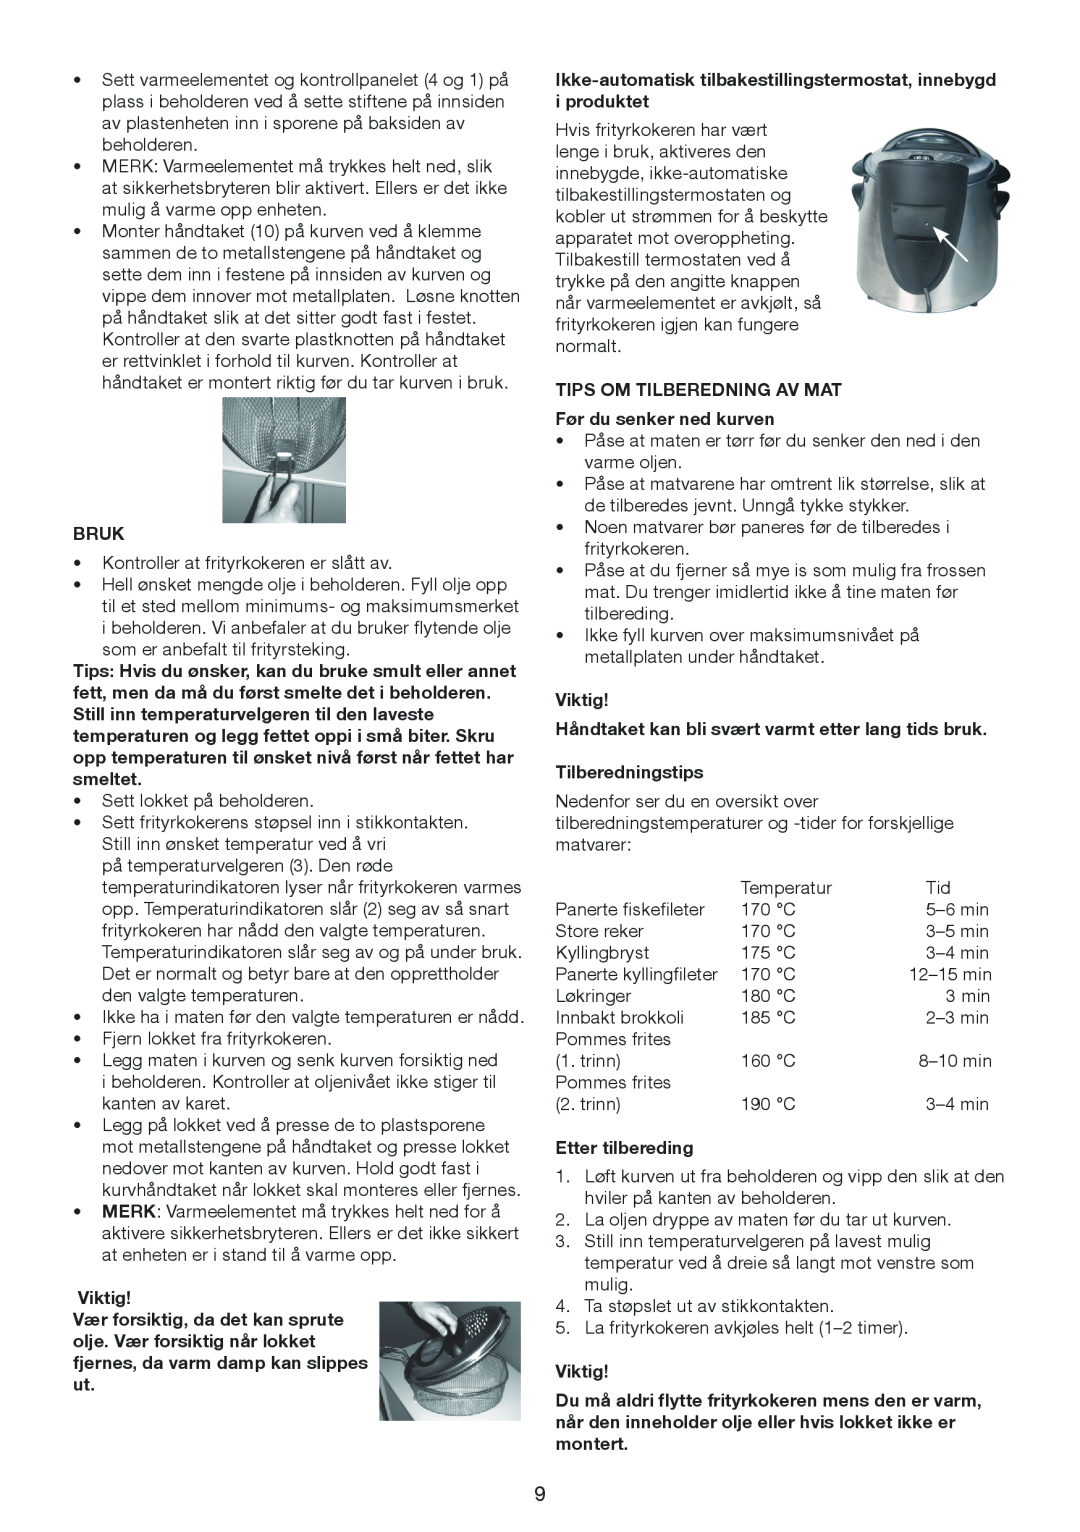 Melissa 643-198 manual Bruk, Ikke-automatisk tilbakestillingstermostat, innebygd i produktet, Etter tilbereding, Viktig 